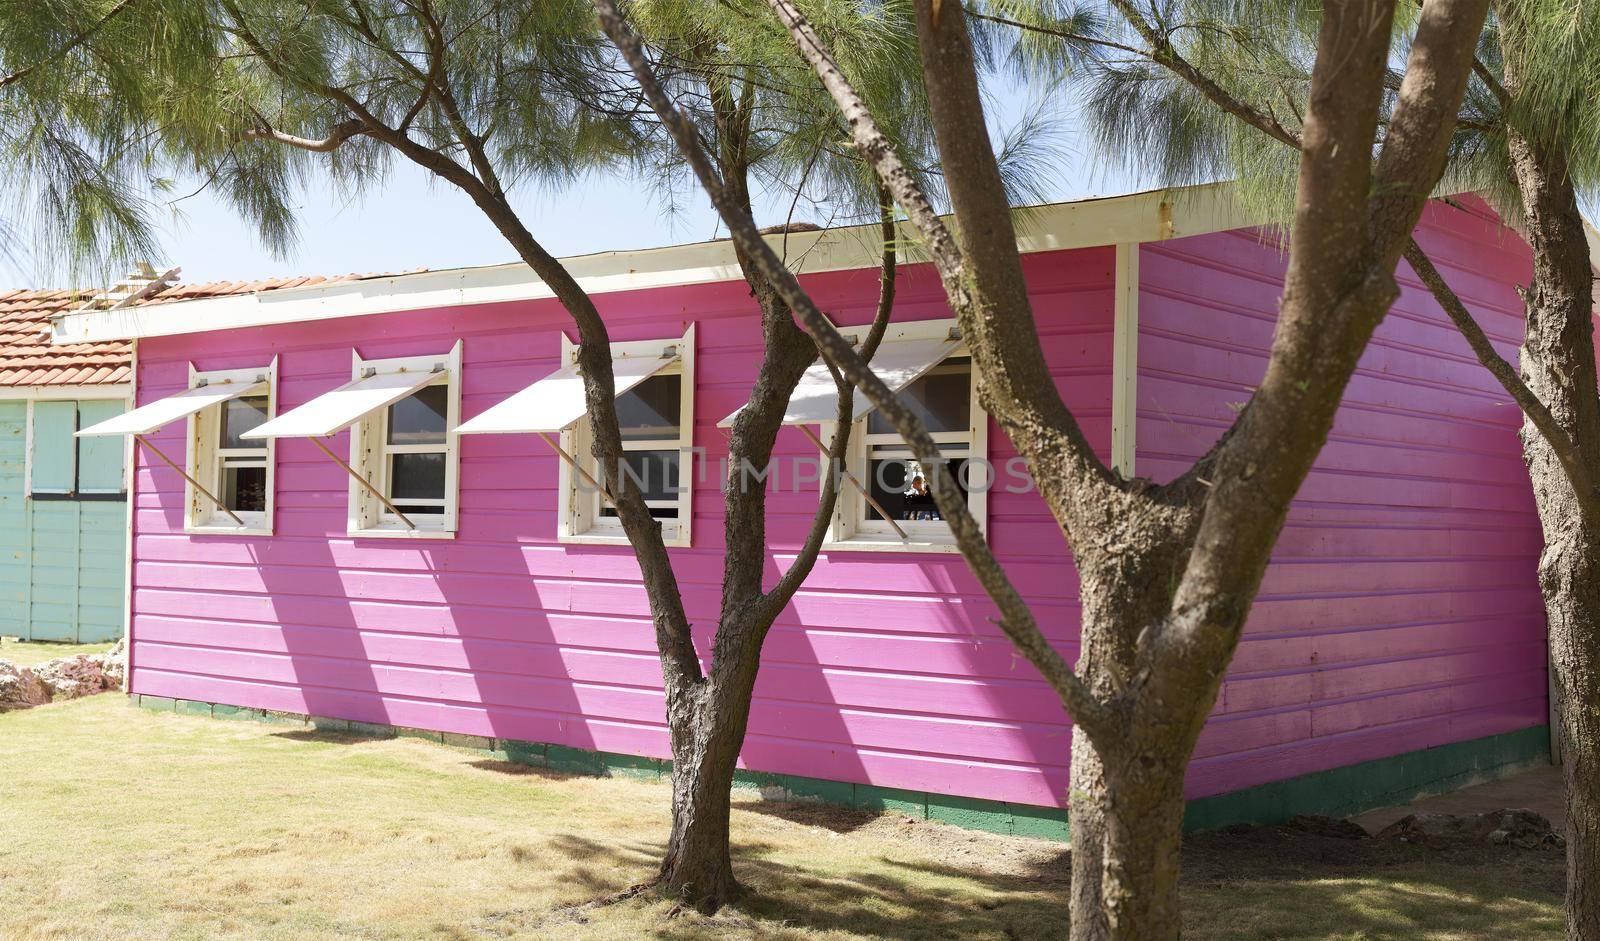 Little Muizenberg Beach Huts, A small pink hut with four windows near a beach